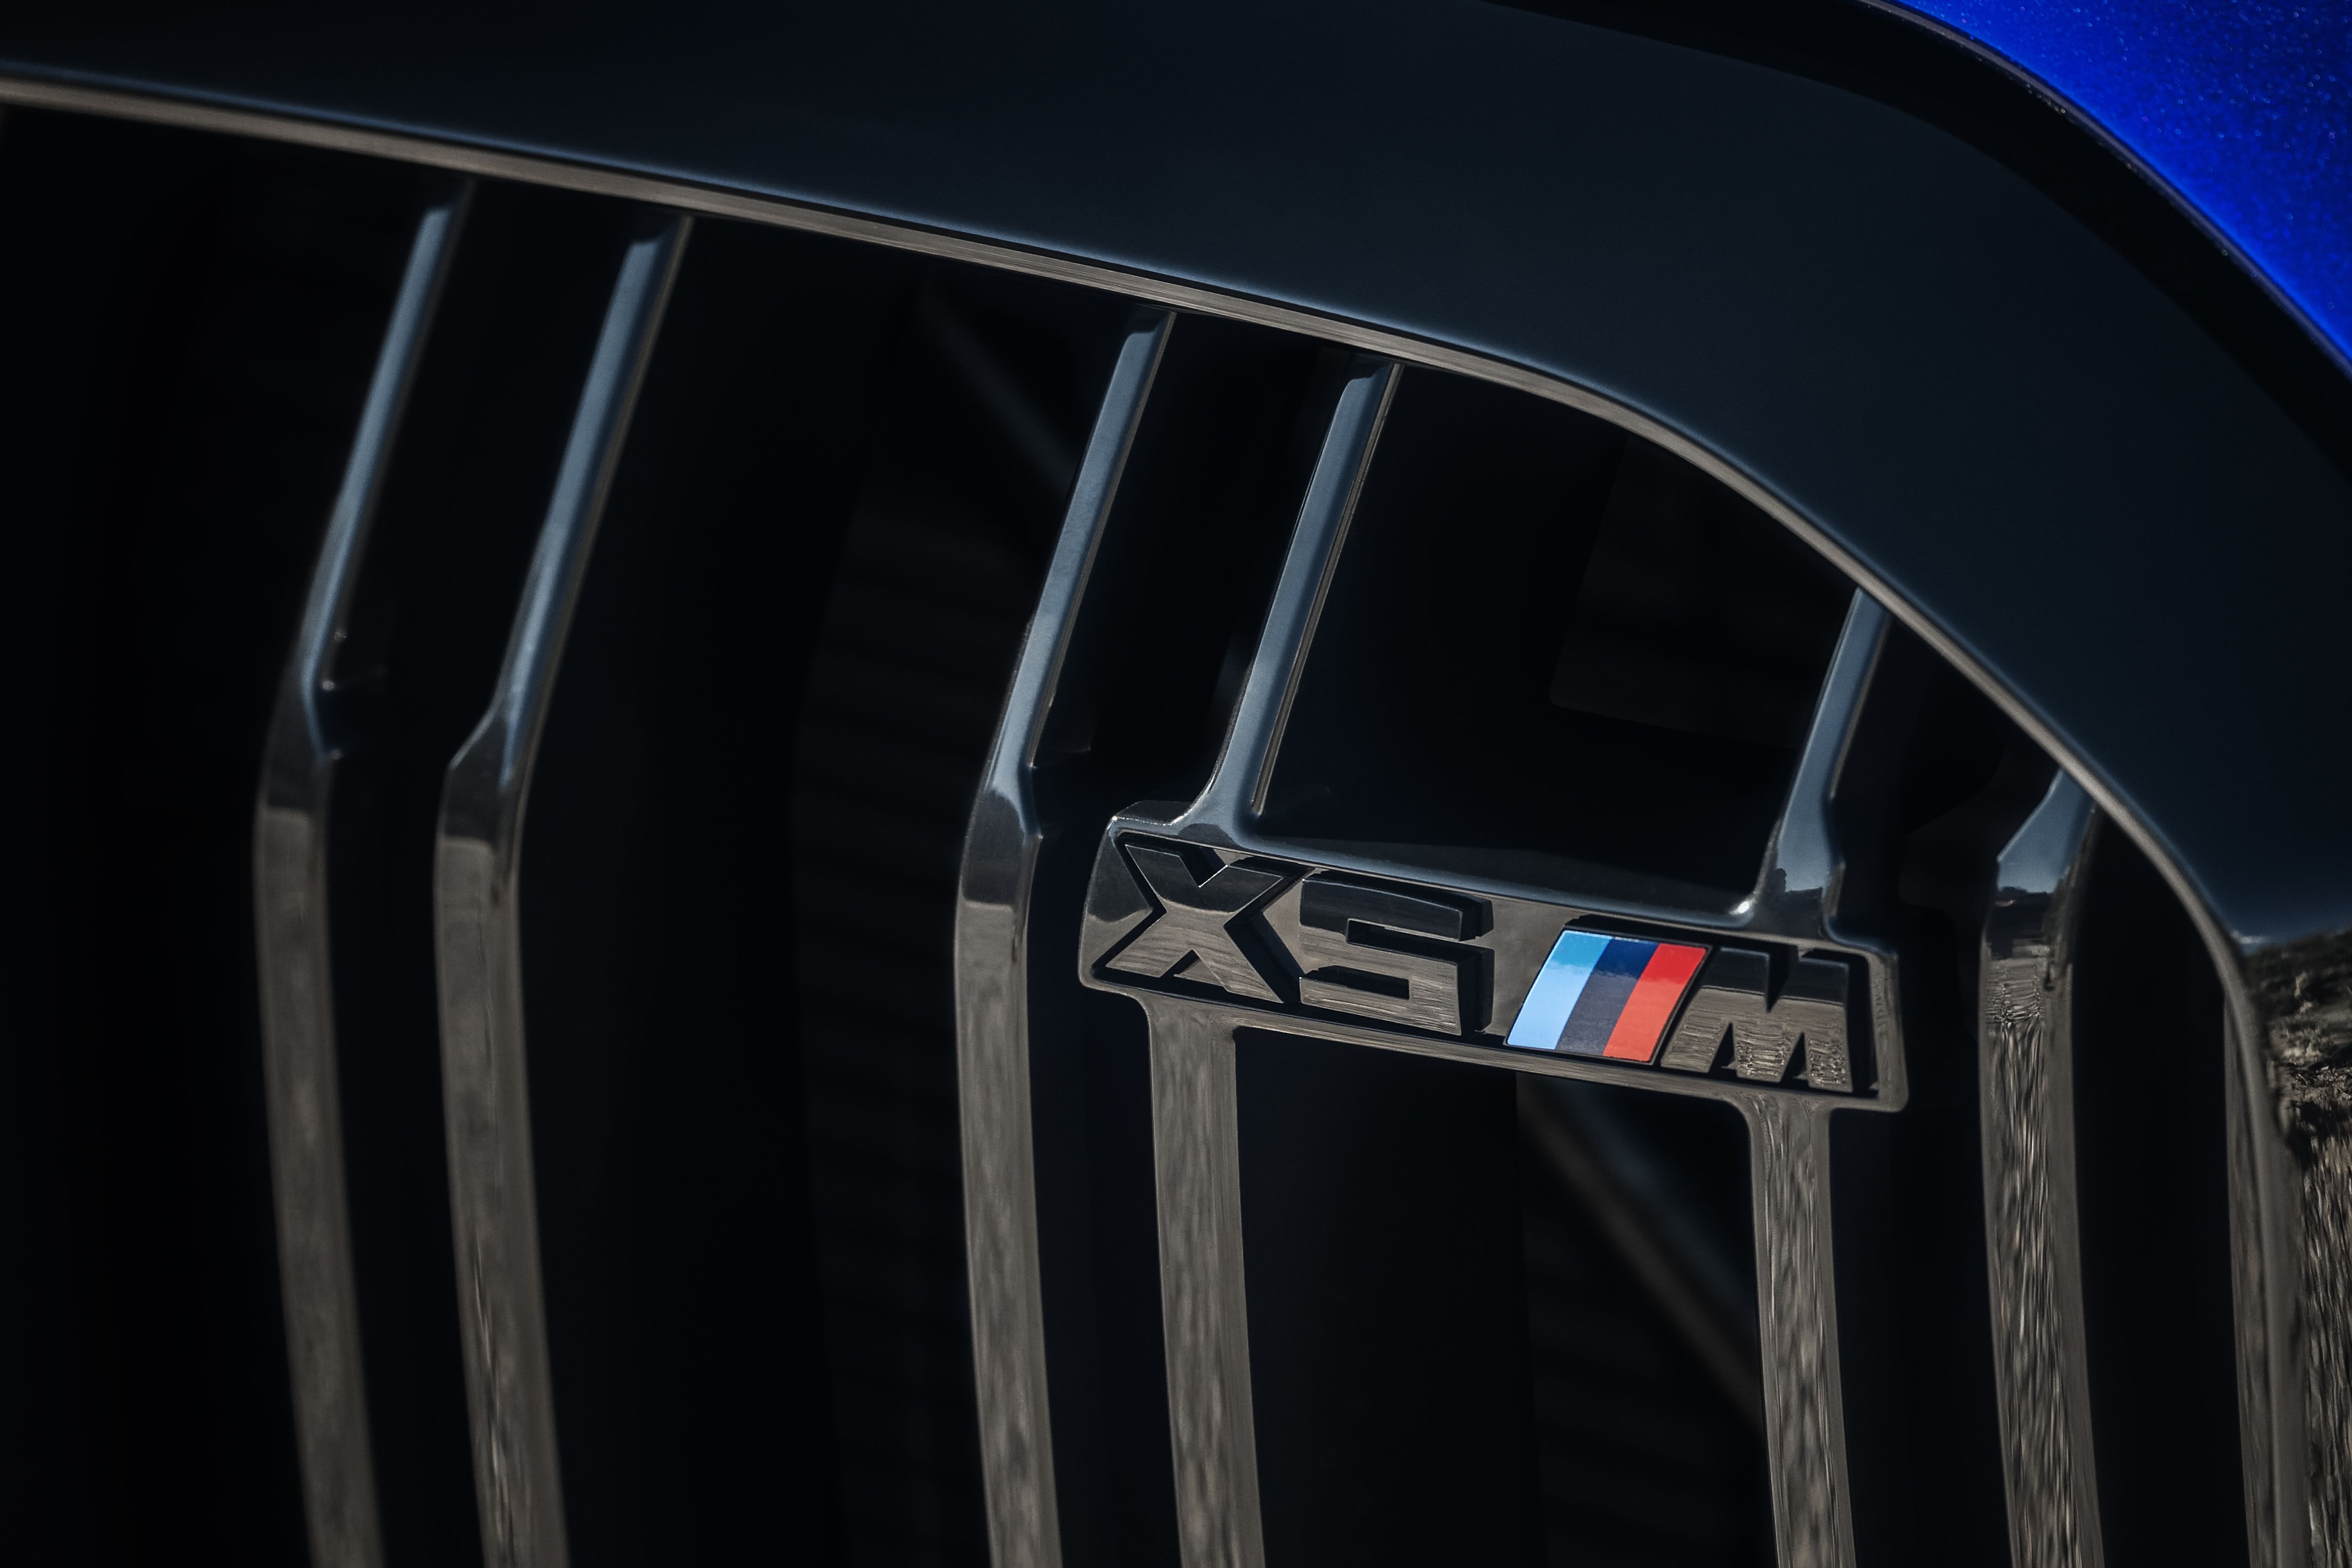 2020 BMW X5 M